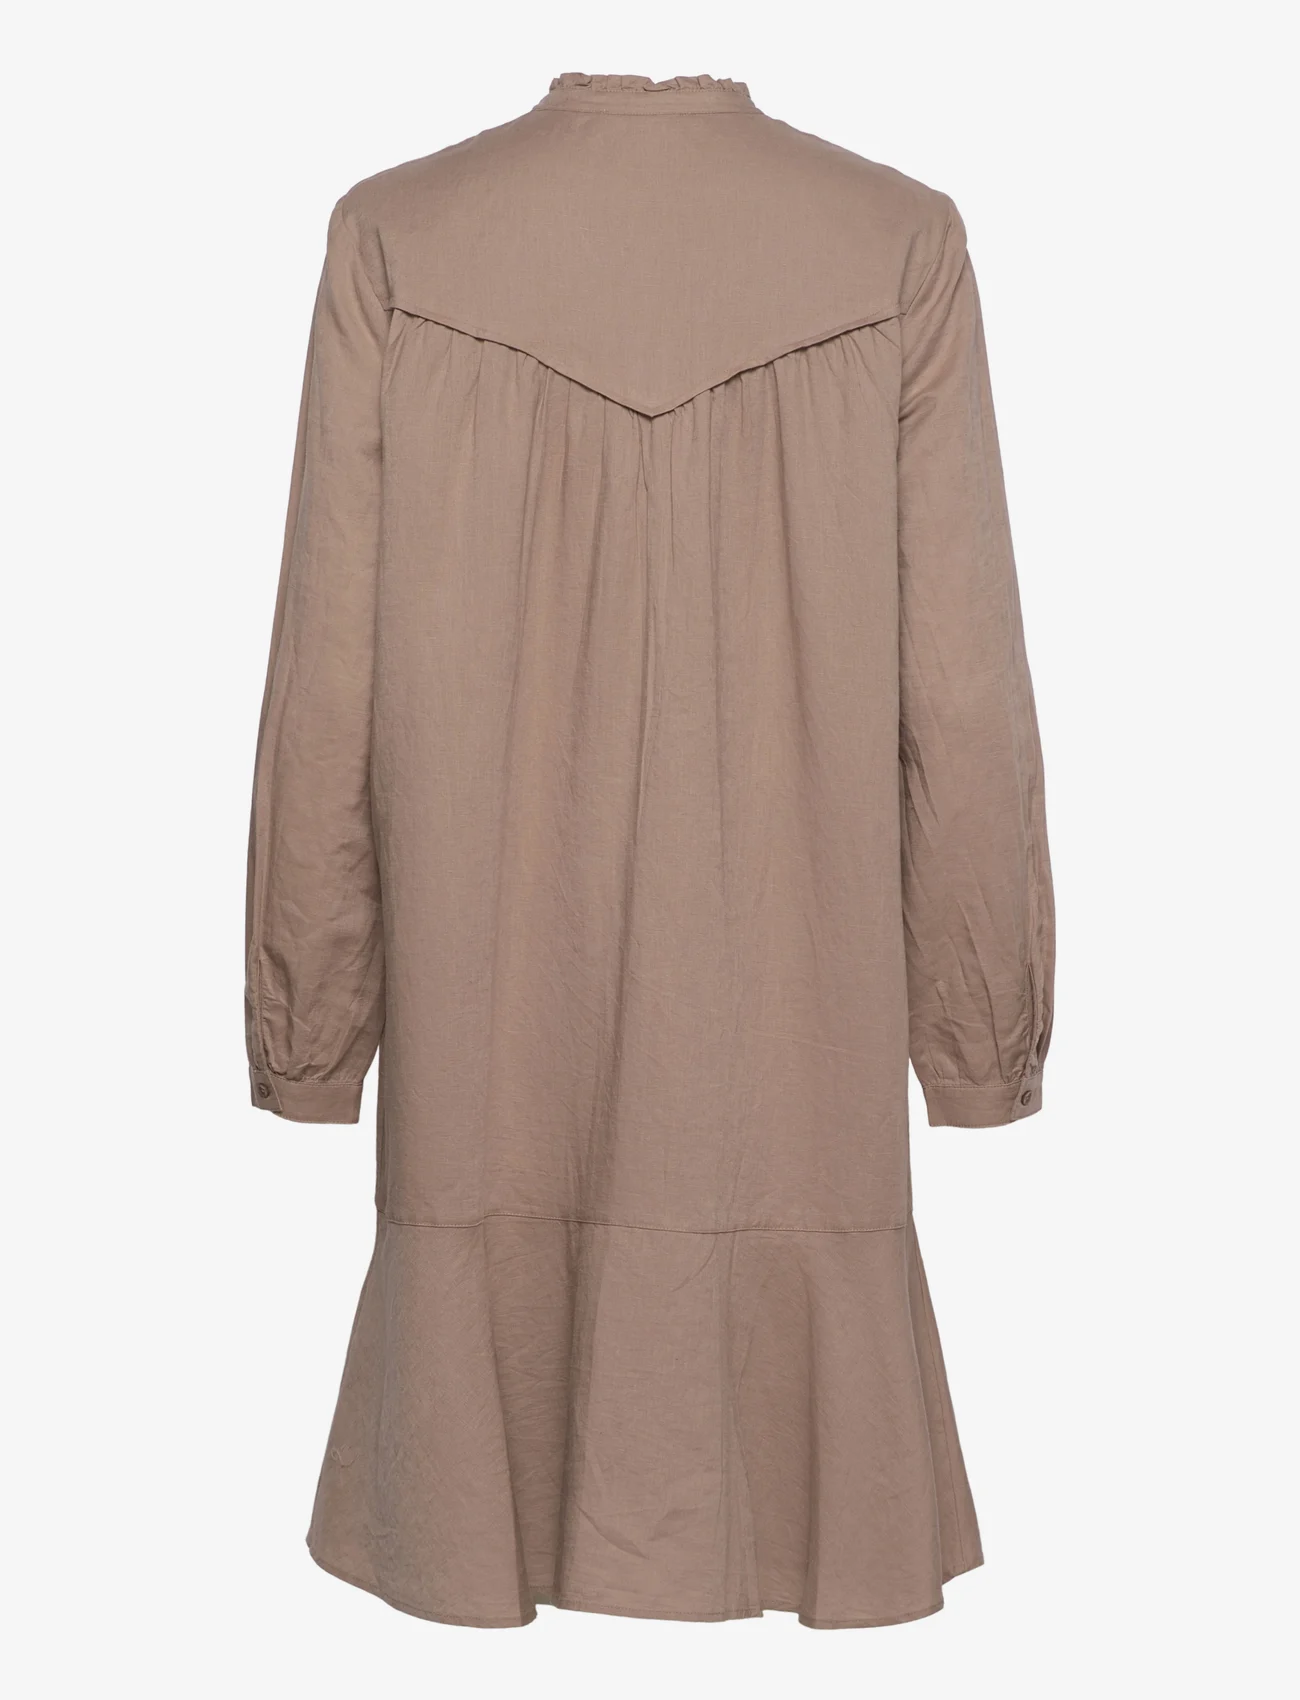 Esprit Casual - Dress in blended linen - hemdkleider - taupe - 1